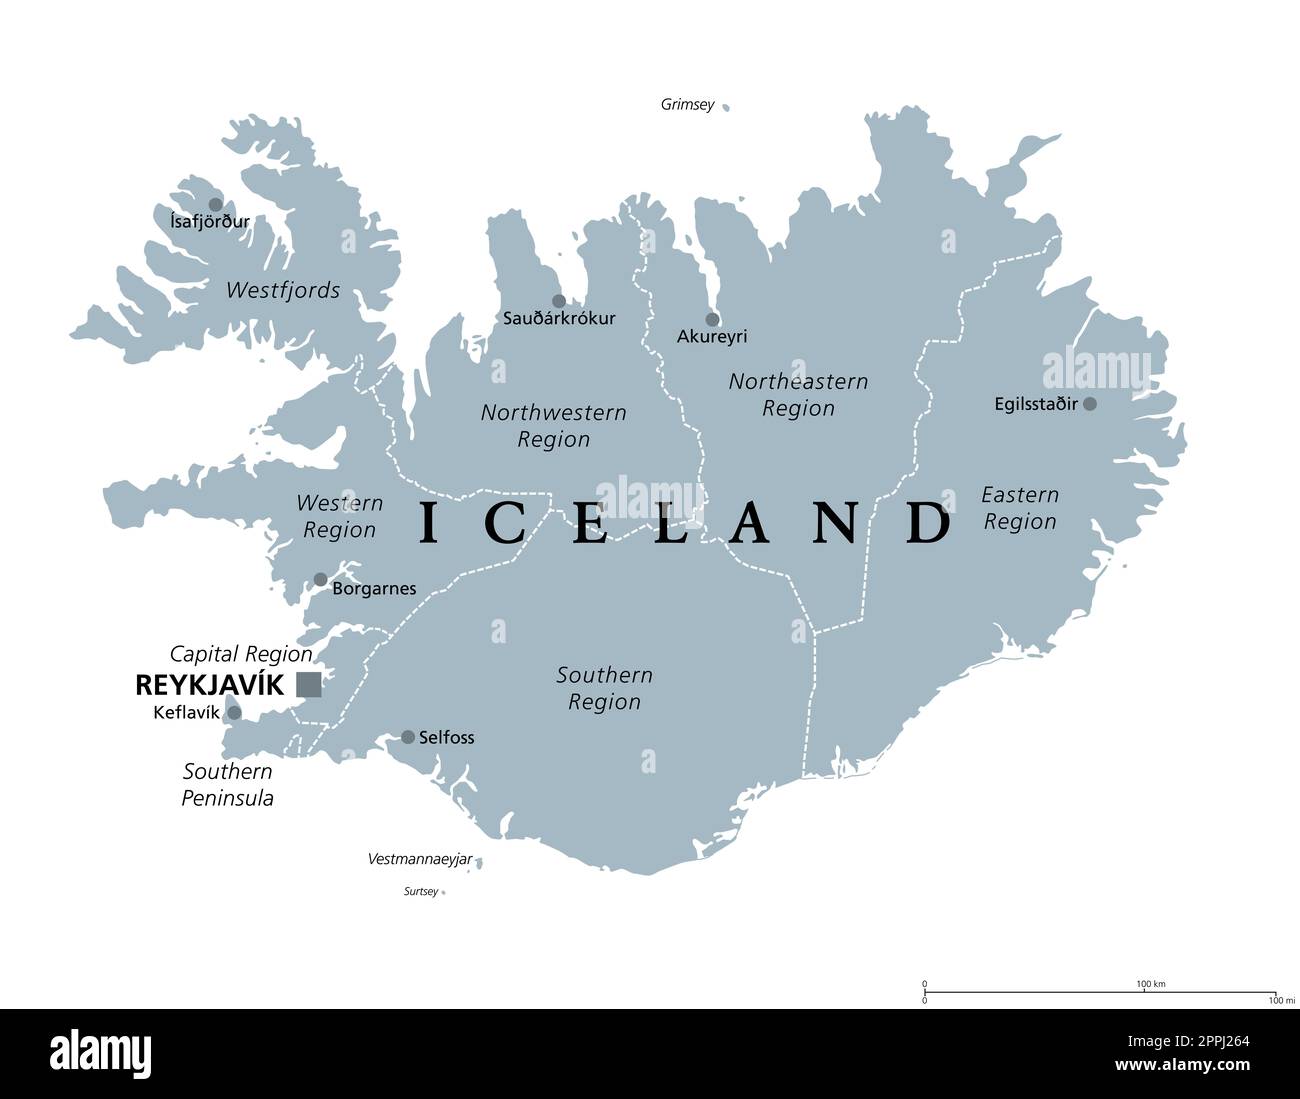 Regionen Islands, graue politische Karte, mit Hauptstadt Reykjavik. Acht Regionen und ihre Sitze, die für statistische Zwecke verwendet werden. Nordische Inselstaaten. Stockfoto